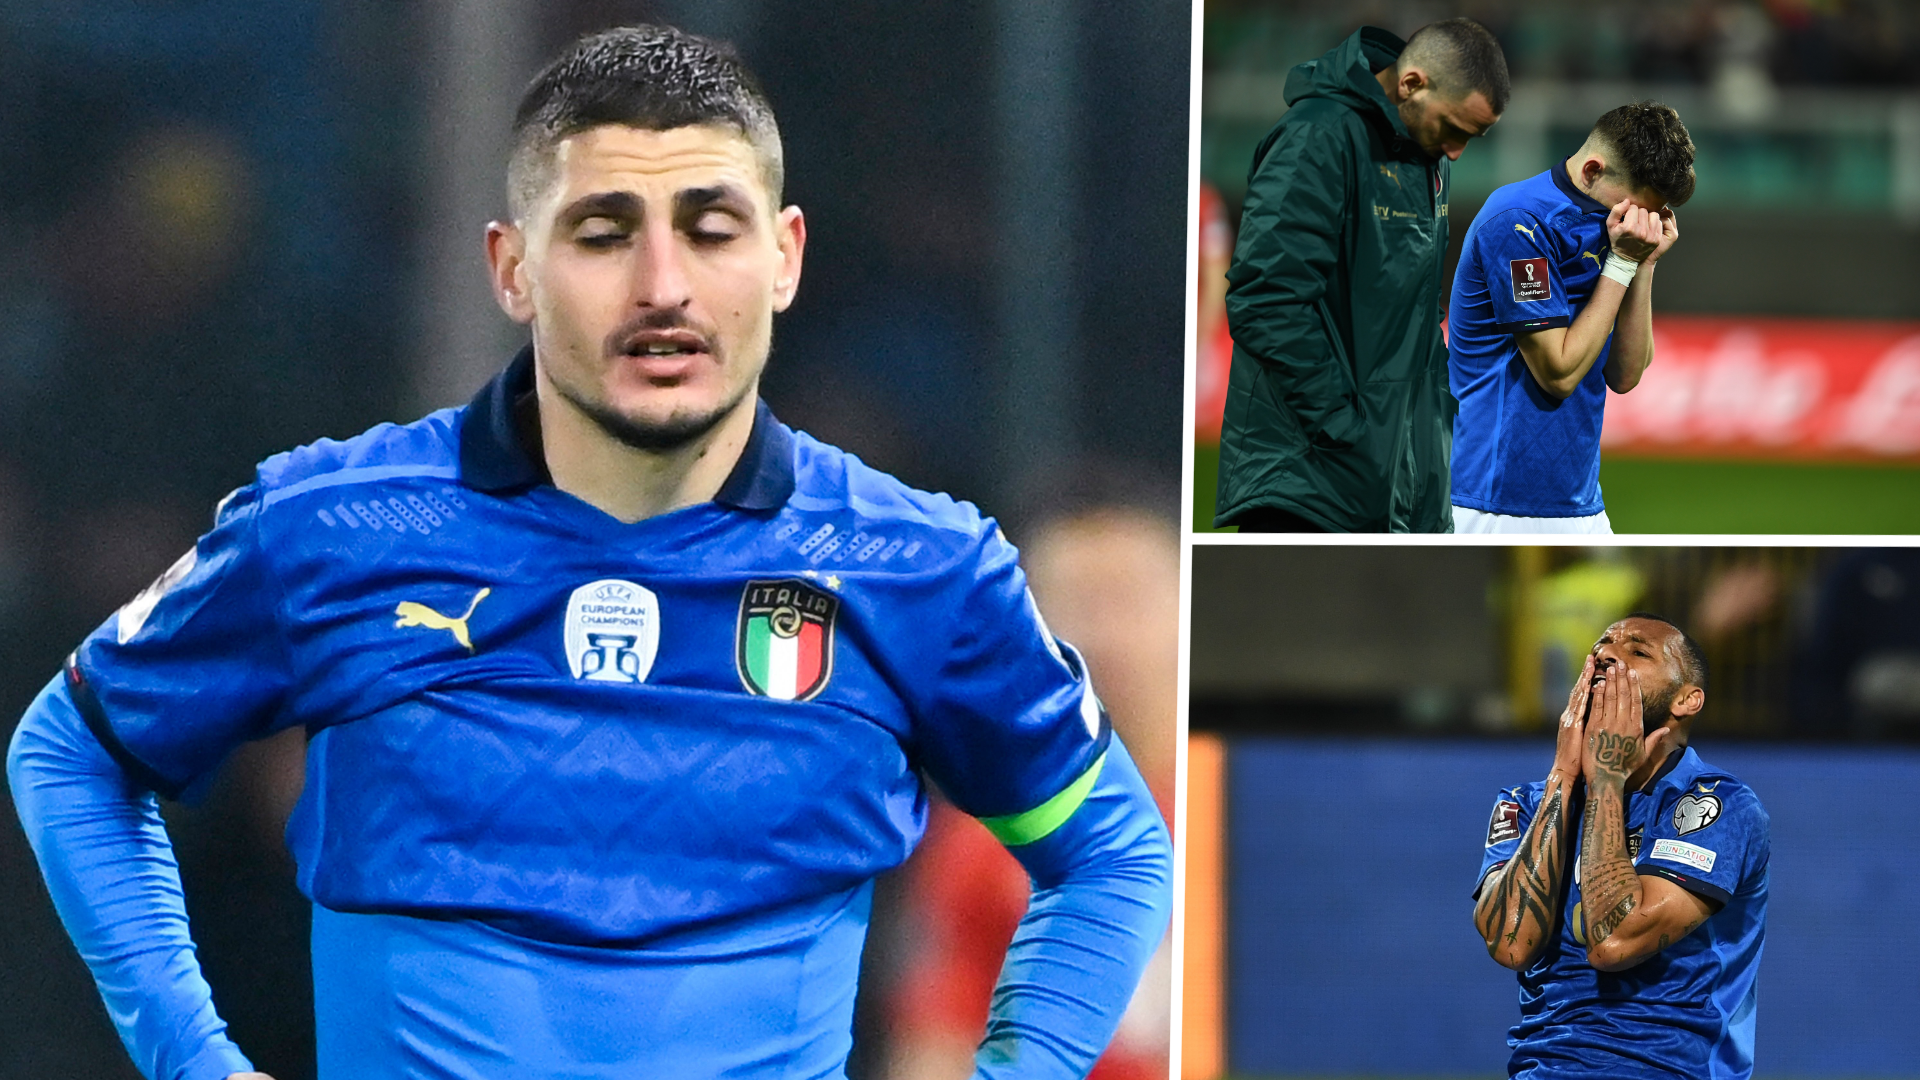 Pourquoi l’Italia n’est pas qualifique pour la Coupe du monde 2022 o il Qatar ?